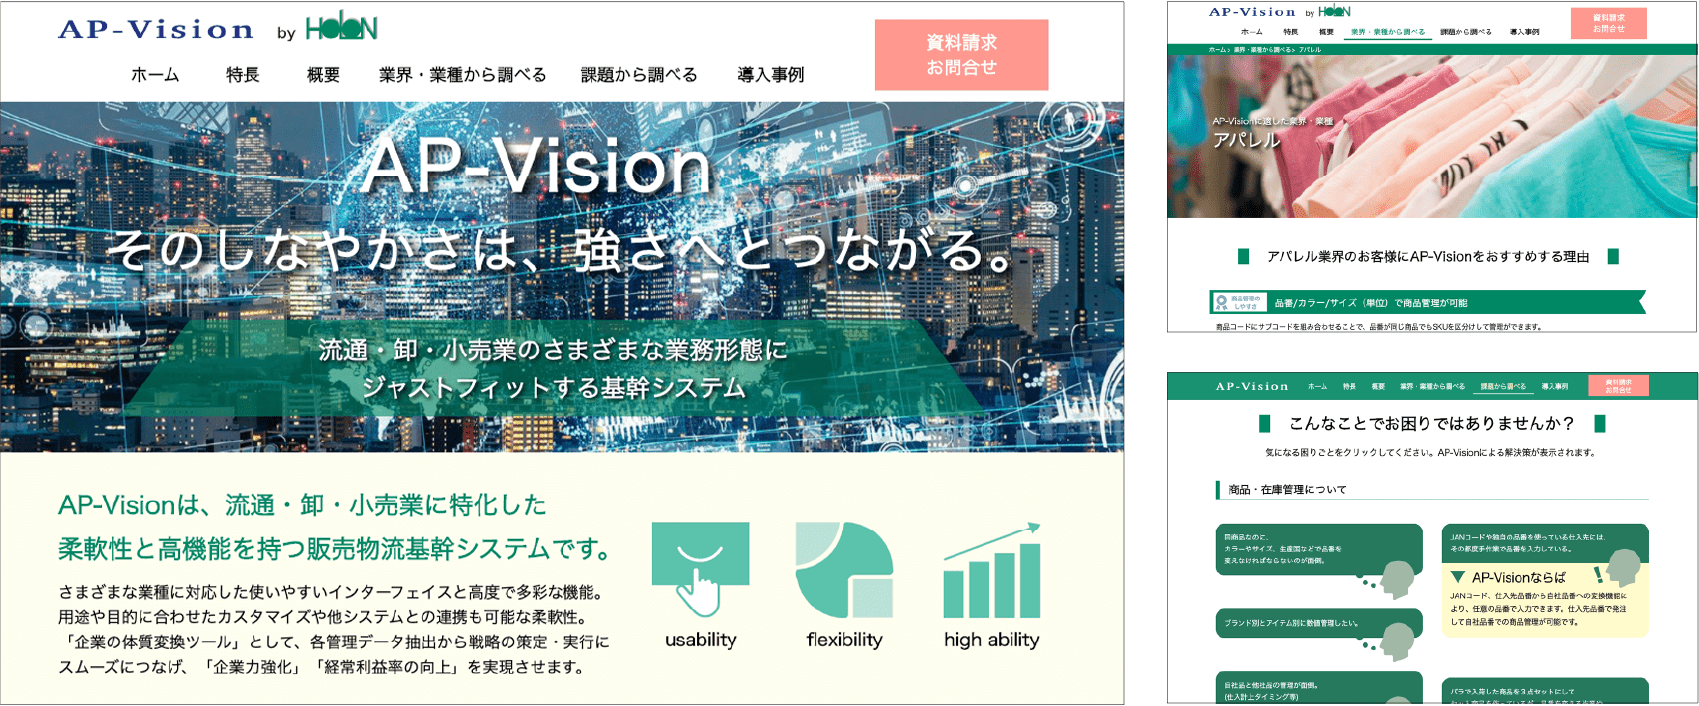 株式会社ホロン AP-Vision特設サイト画像